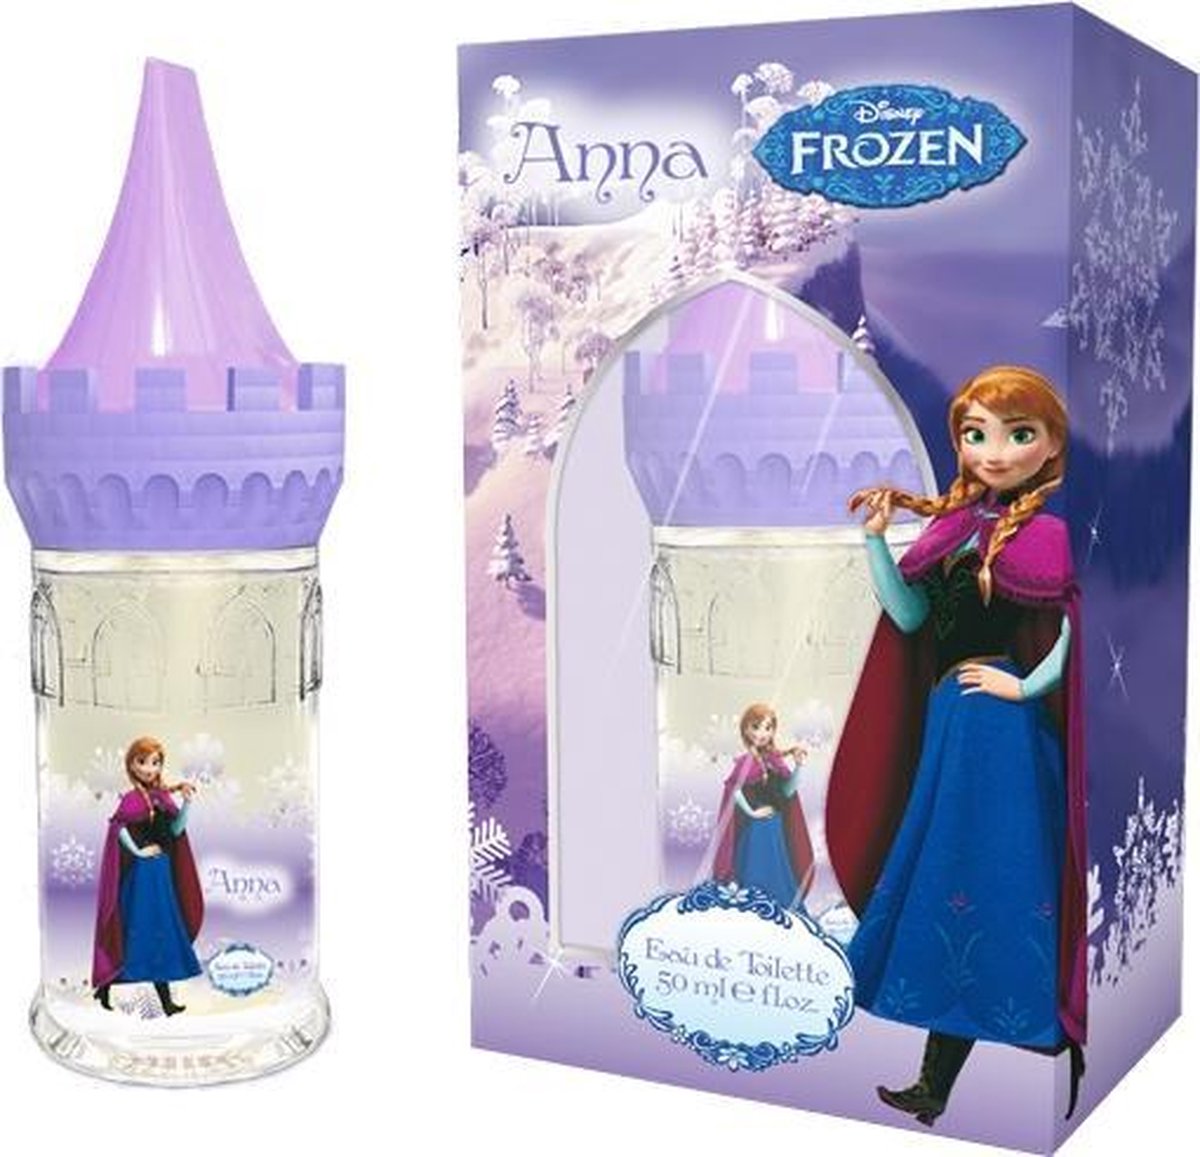 Frozen Anna Castle serie EDT 50ml(totale uitverkoop) - Walt Disney Company